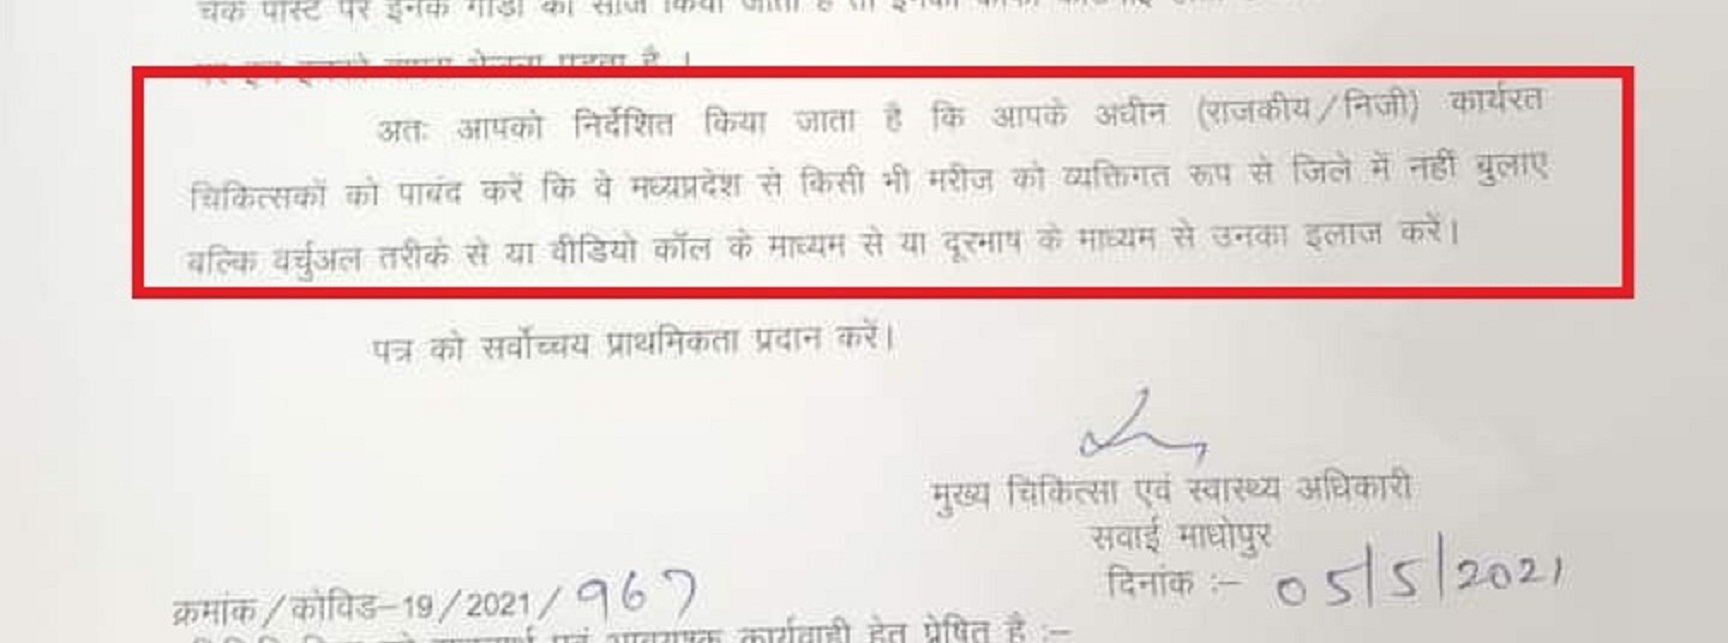 राजस्थान के सवाईमाधोपुर प्रशासन ने श्योपुर के मरीजों के उपचार पर लगाई रोक!